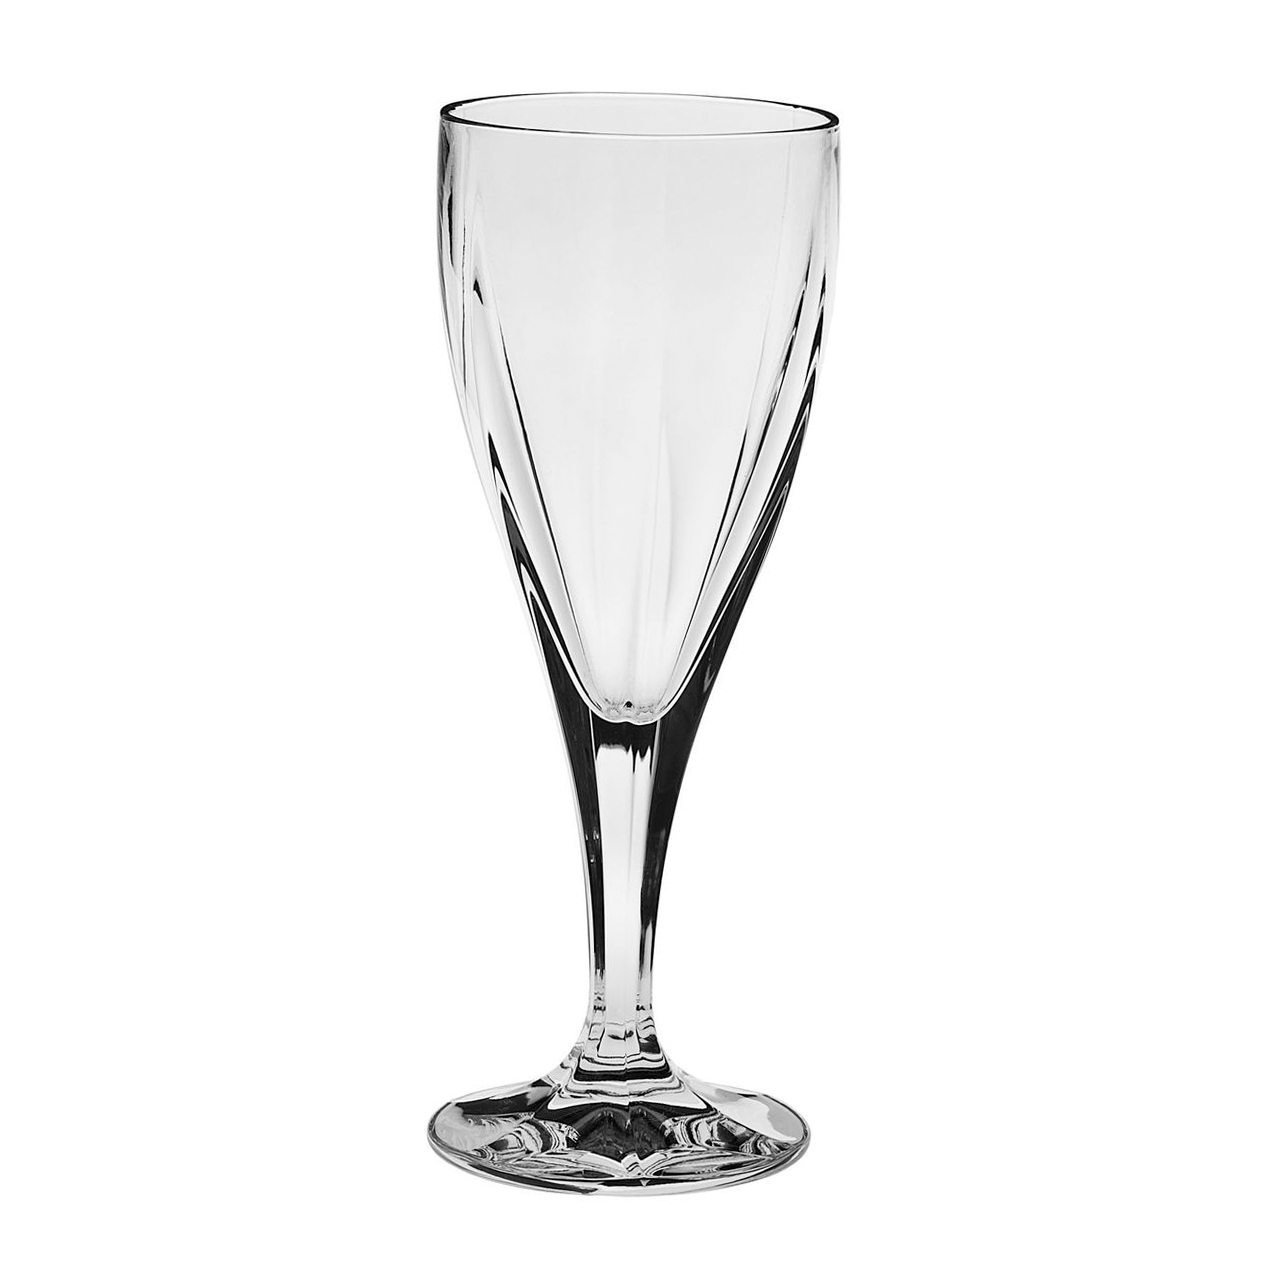 Бокал для вина Crystalex cz sro Рюмка виктория 170мл вино прессхрусталь (990/10900/0/44600/170), цвет прозрачный - фото 1